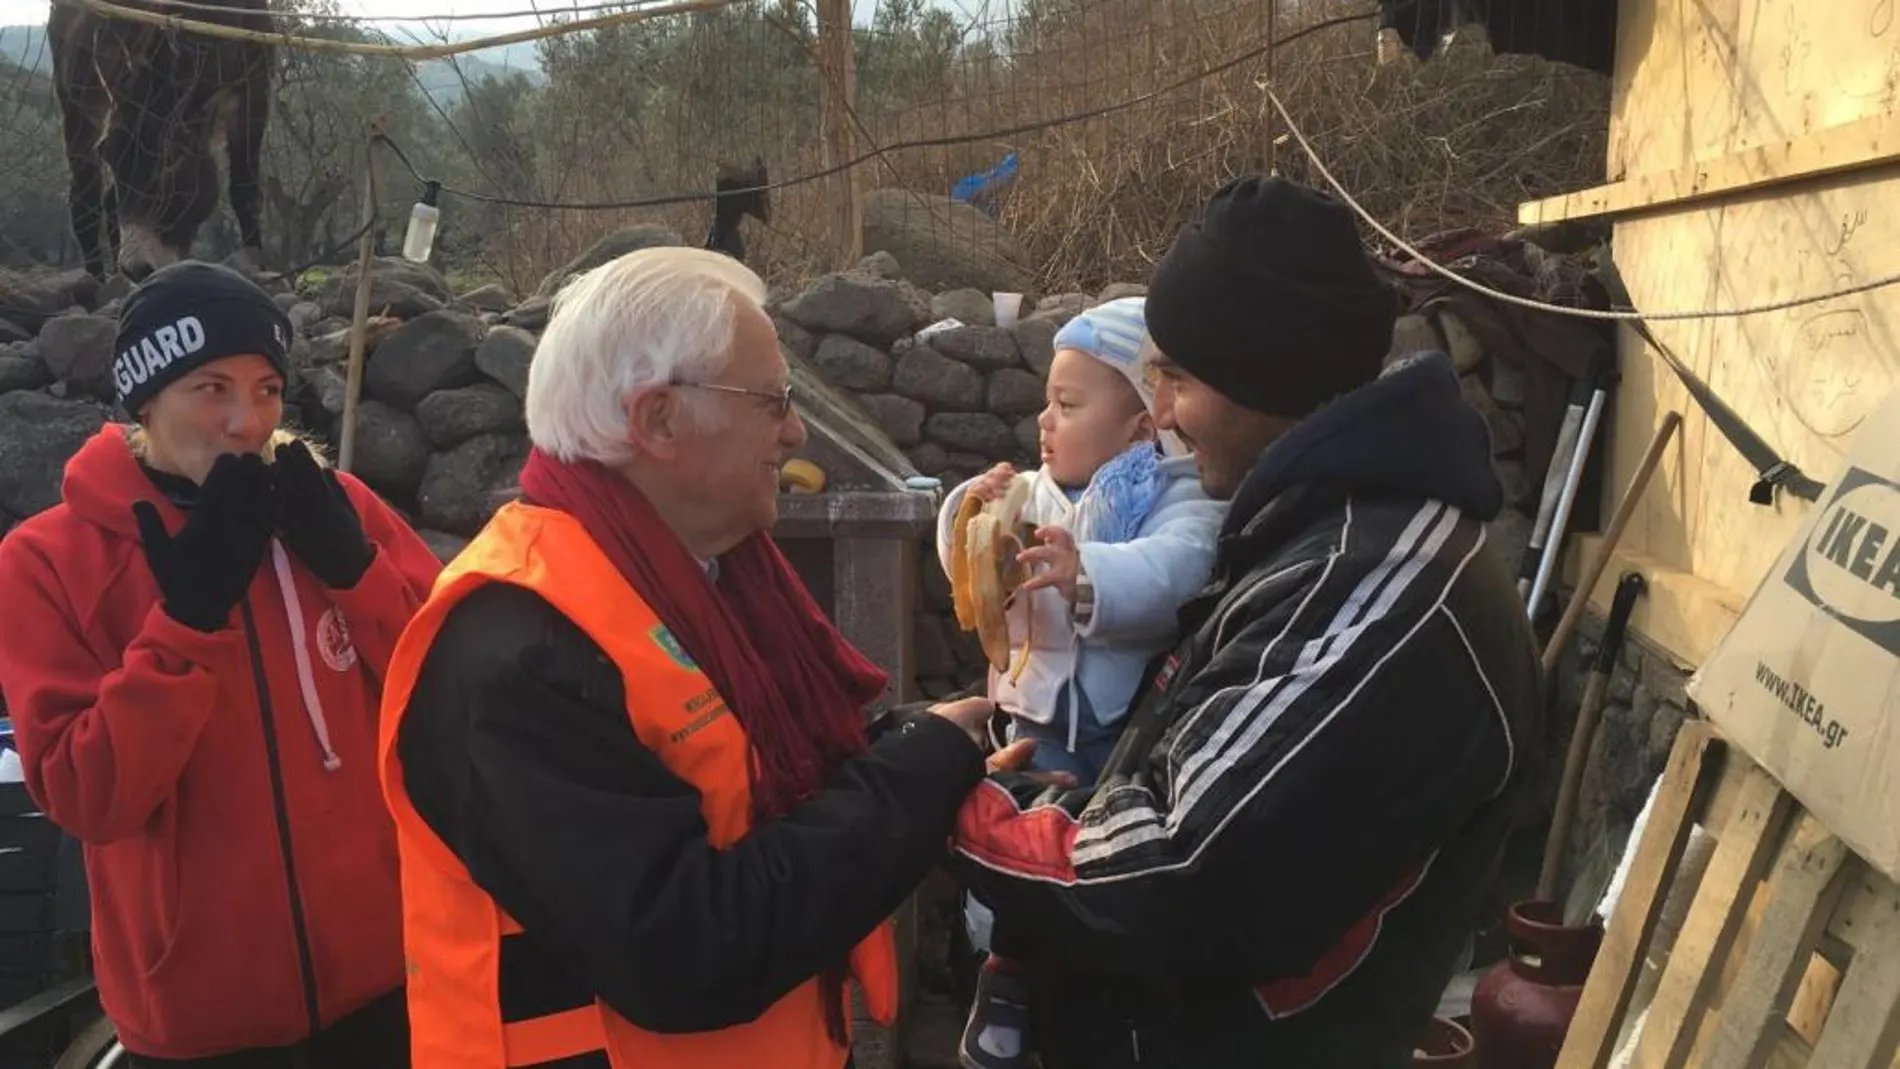 Entrañable imagen, el Padre Ángel, en el centro, ofreciendo alimento a un bebé turco en brazos de su padre, a la izda., la madre del niño.